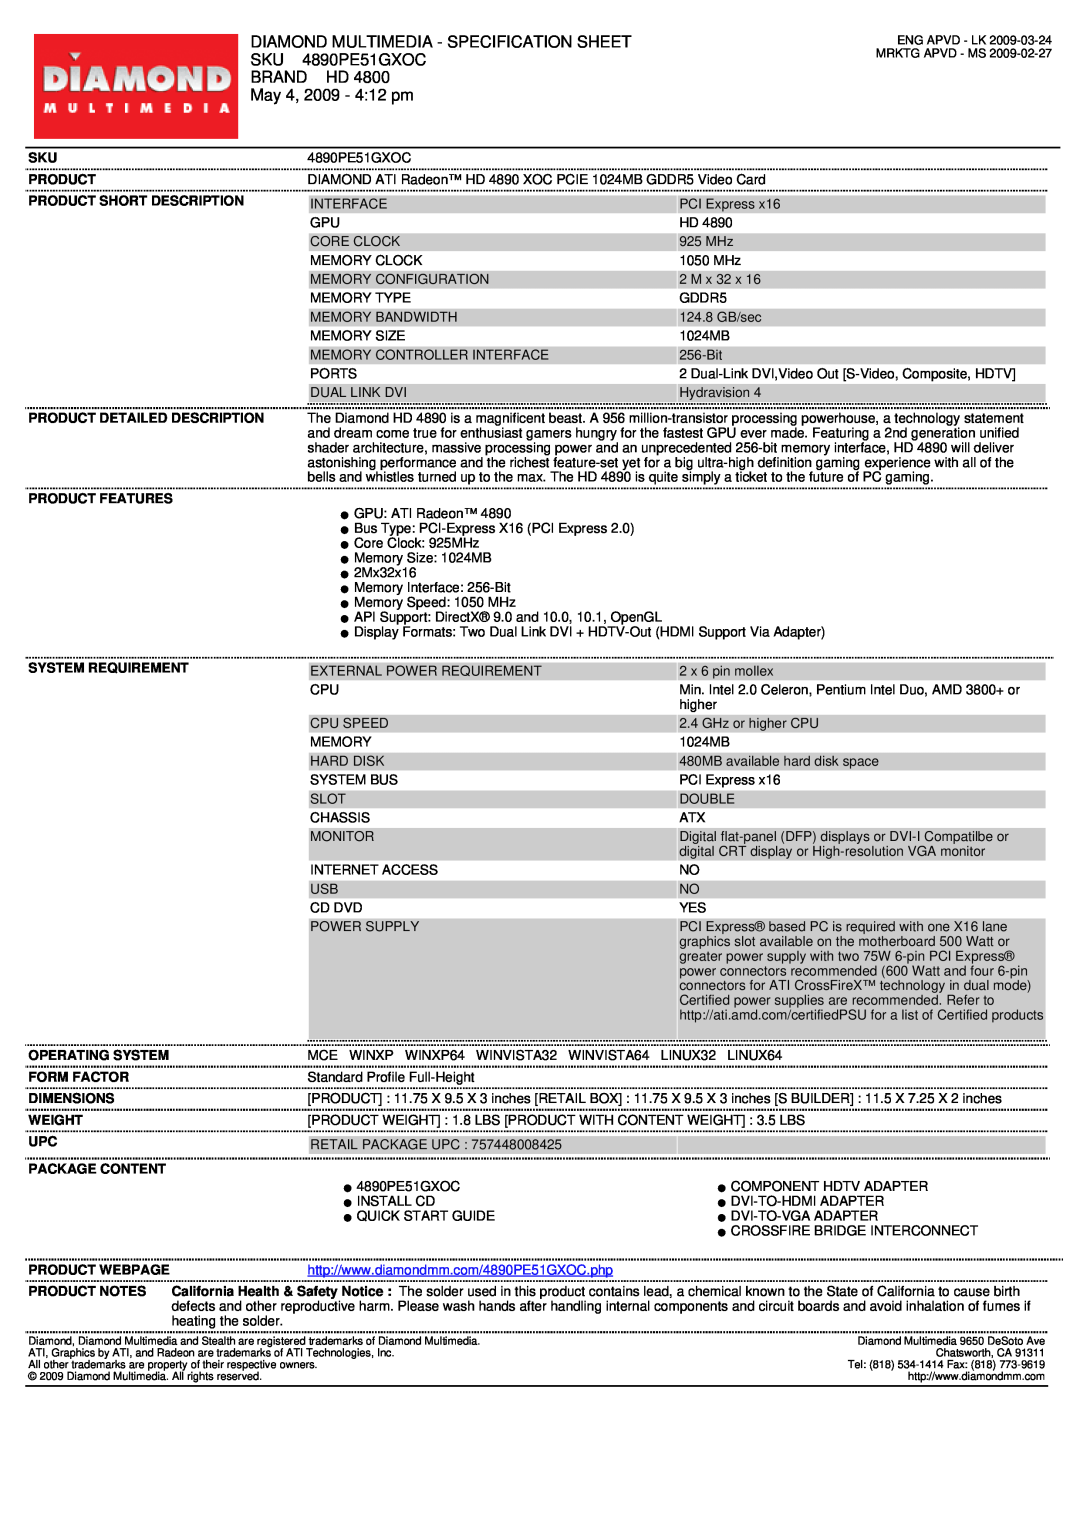 Diamond Multimedia 4890PE51GXOC specifications Diamond Multimedia - Specification Sheet, Brand Hd, May 4, 2009 - 412 pm 